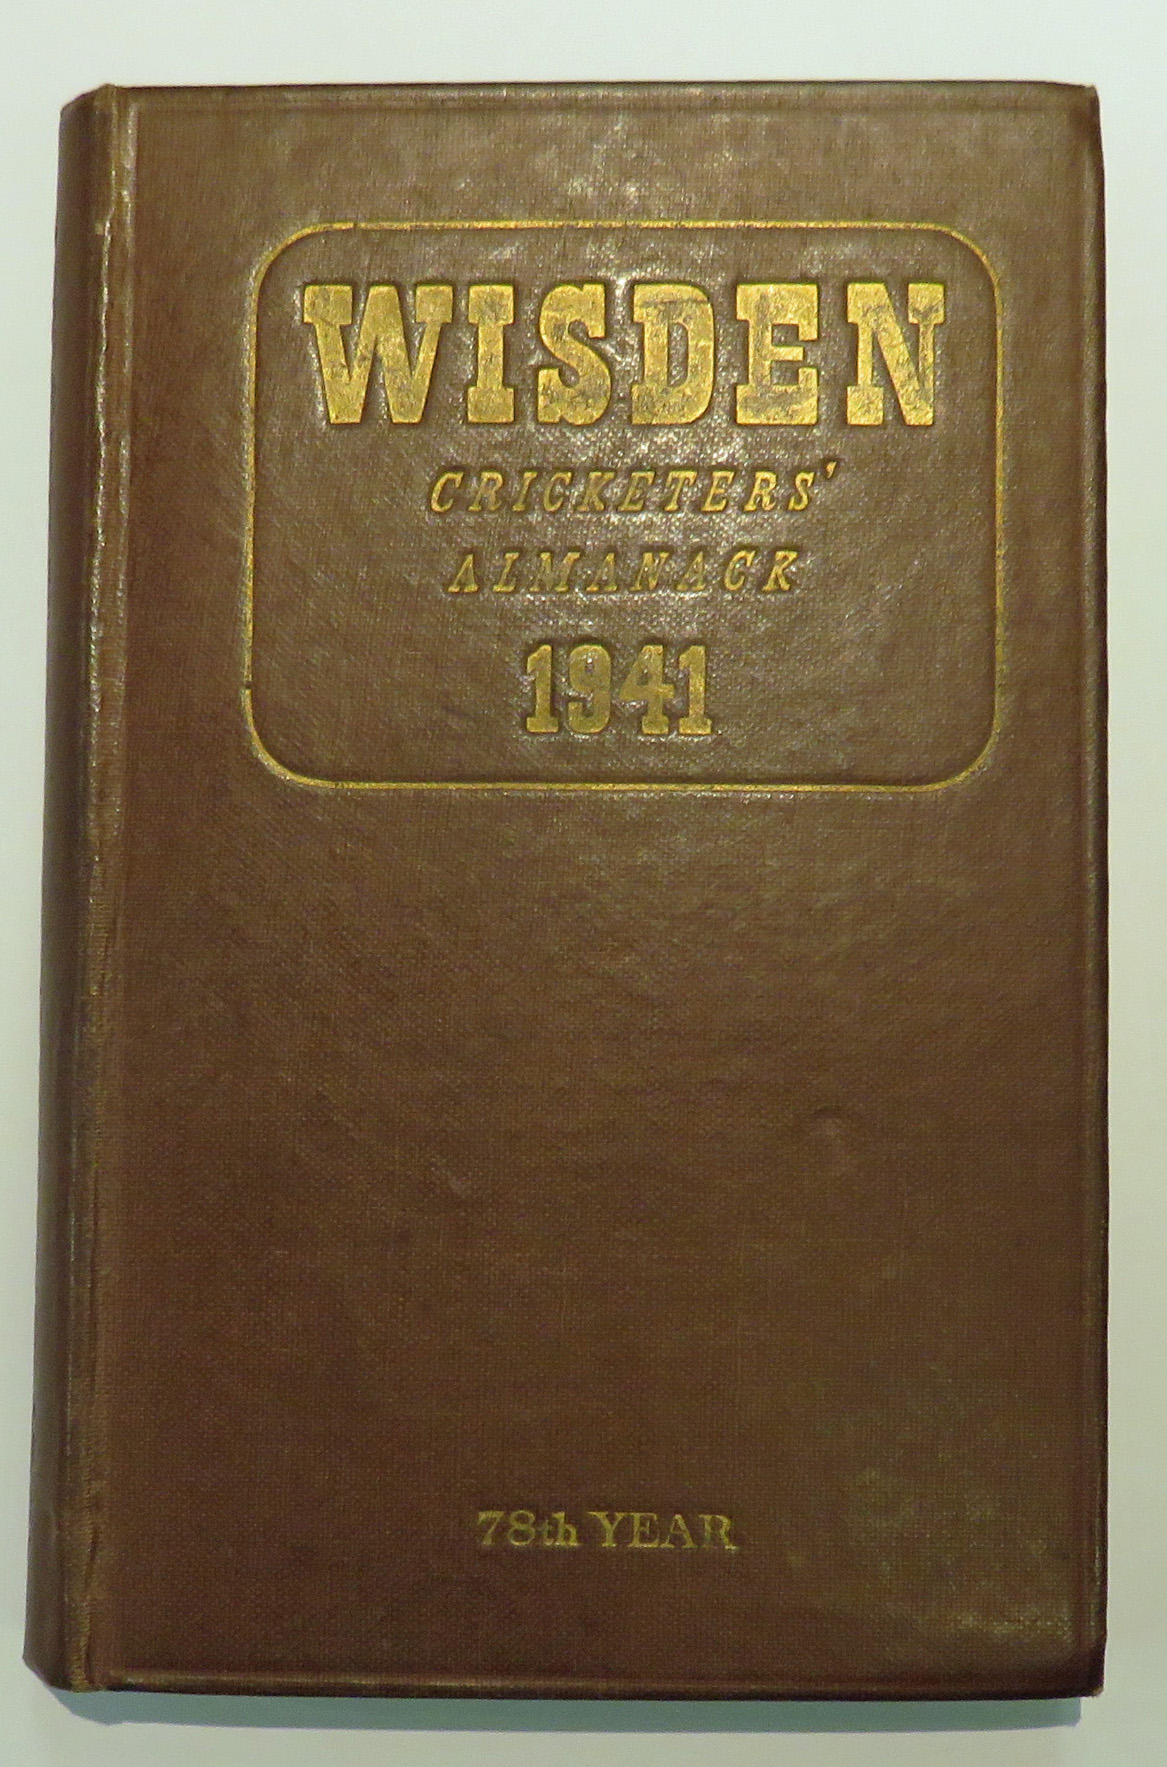 **Wisden's Cricketers' Almanack For 1941**